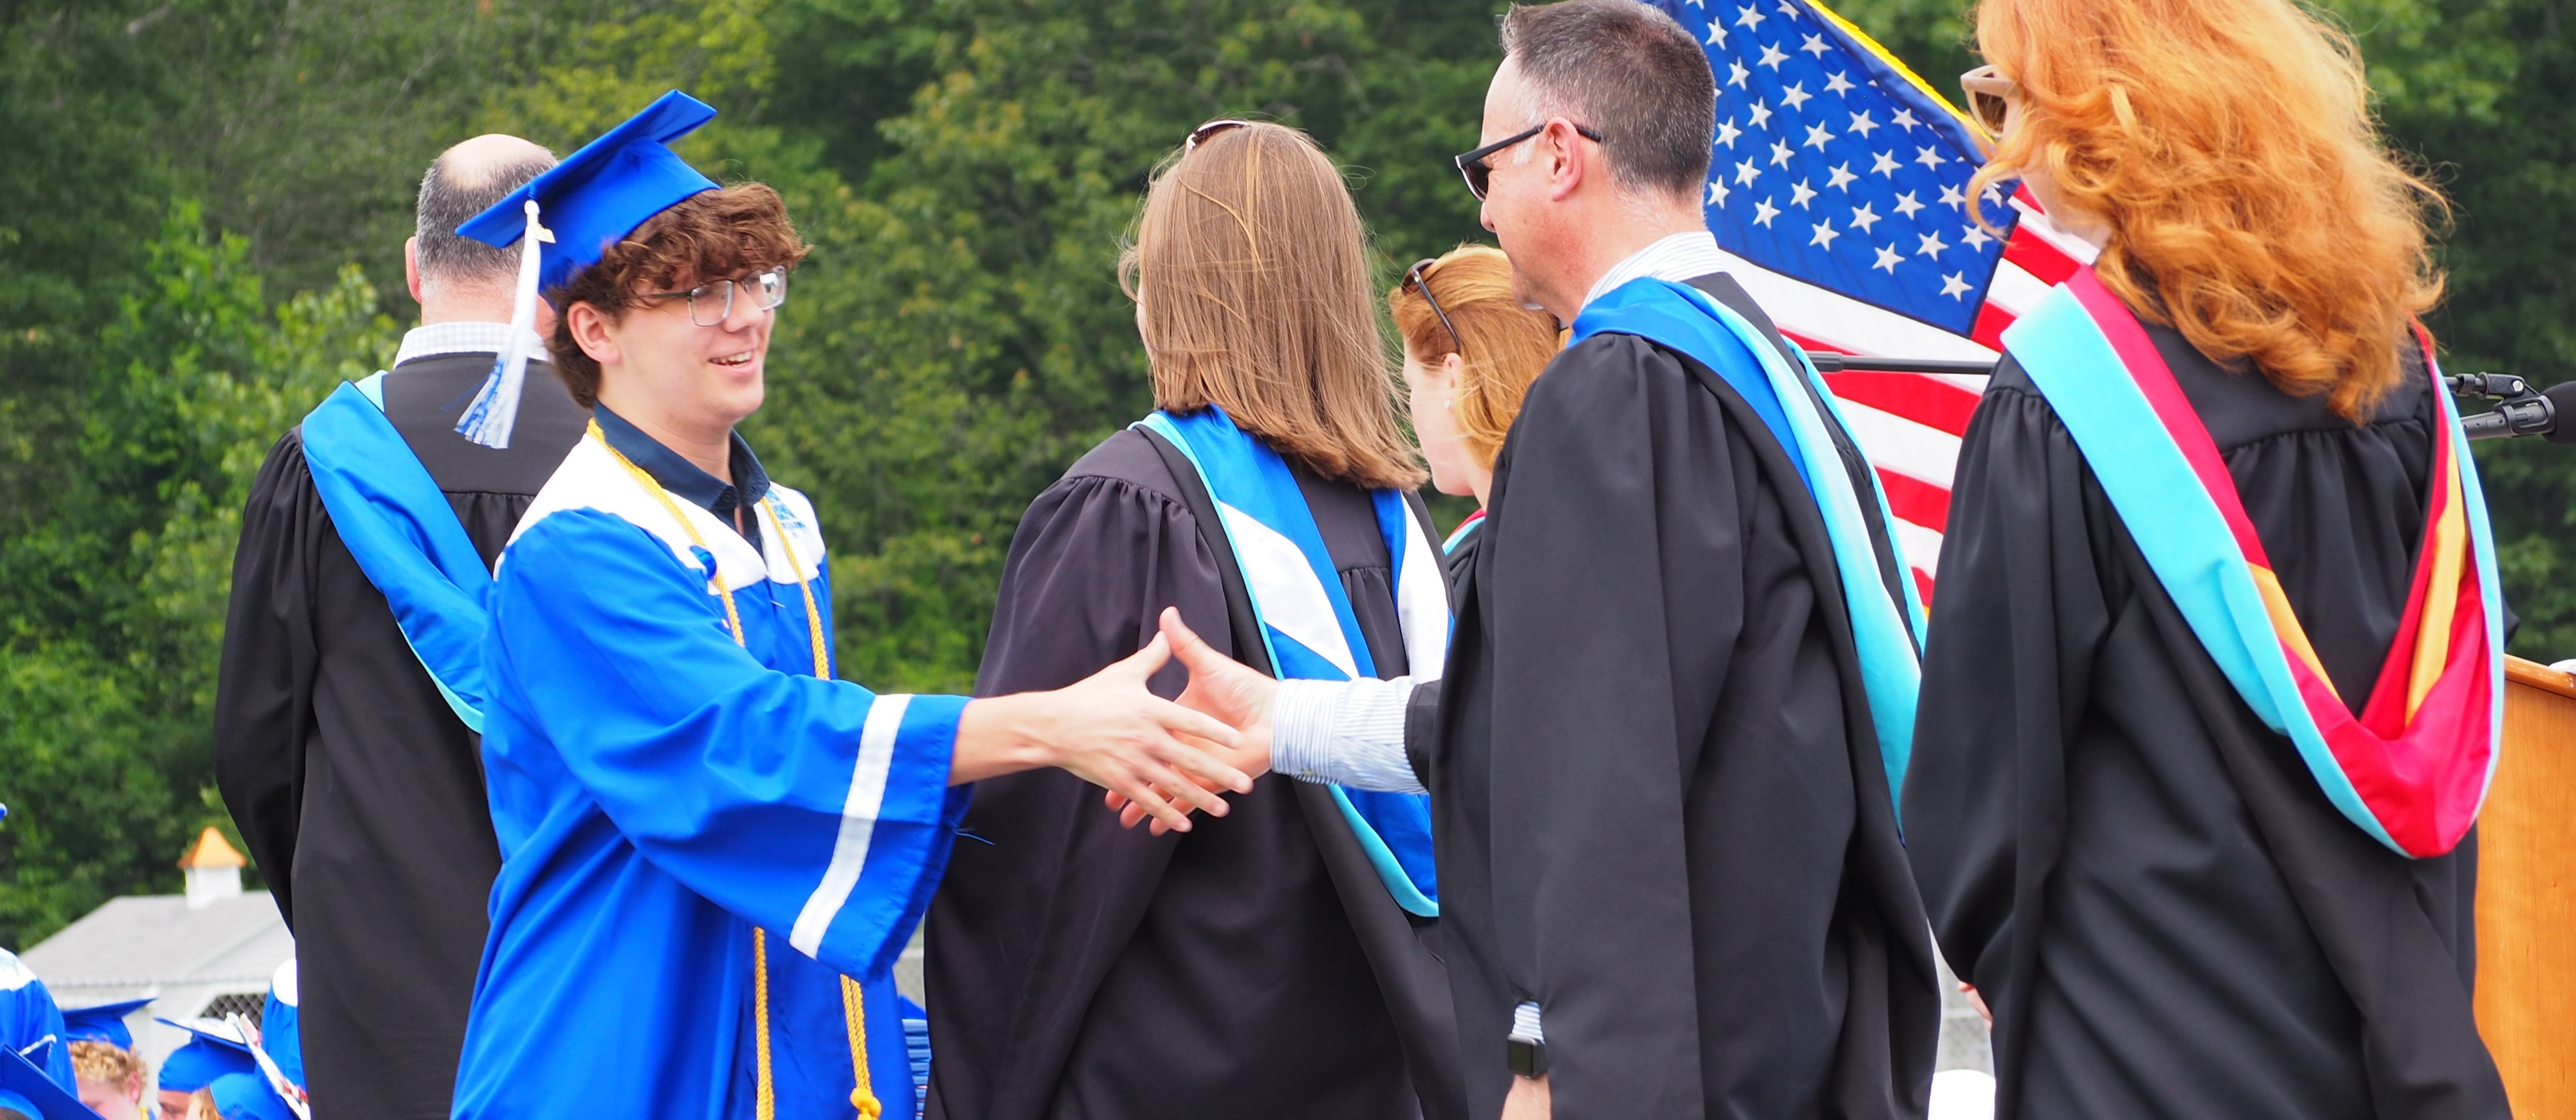 Graduate handshake